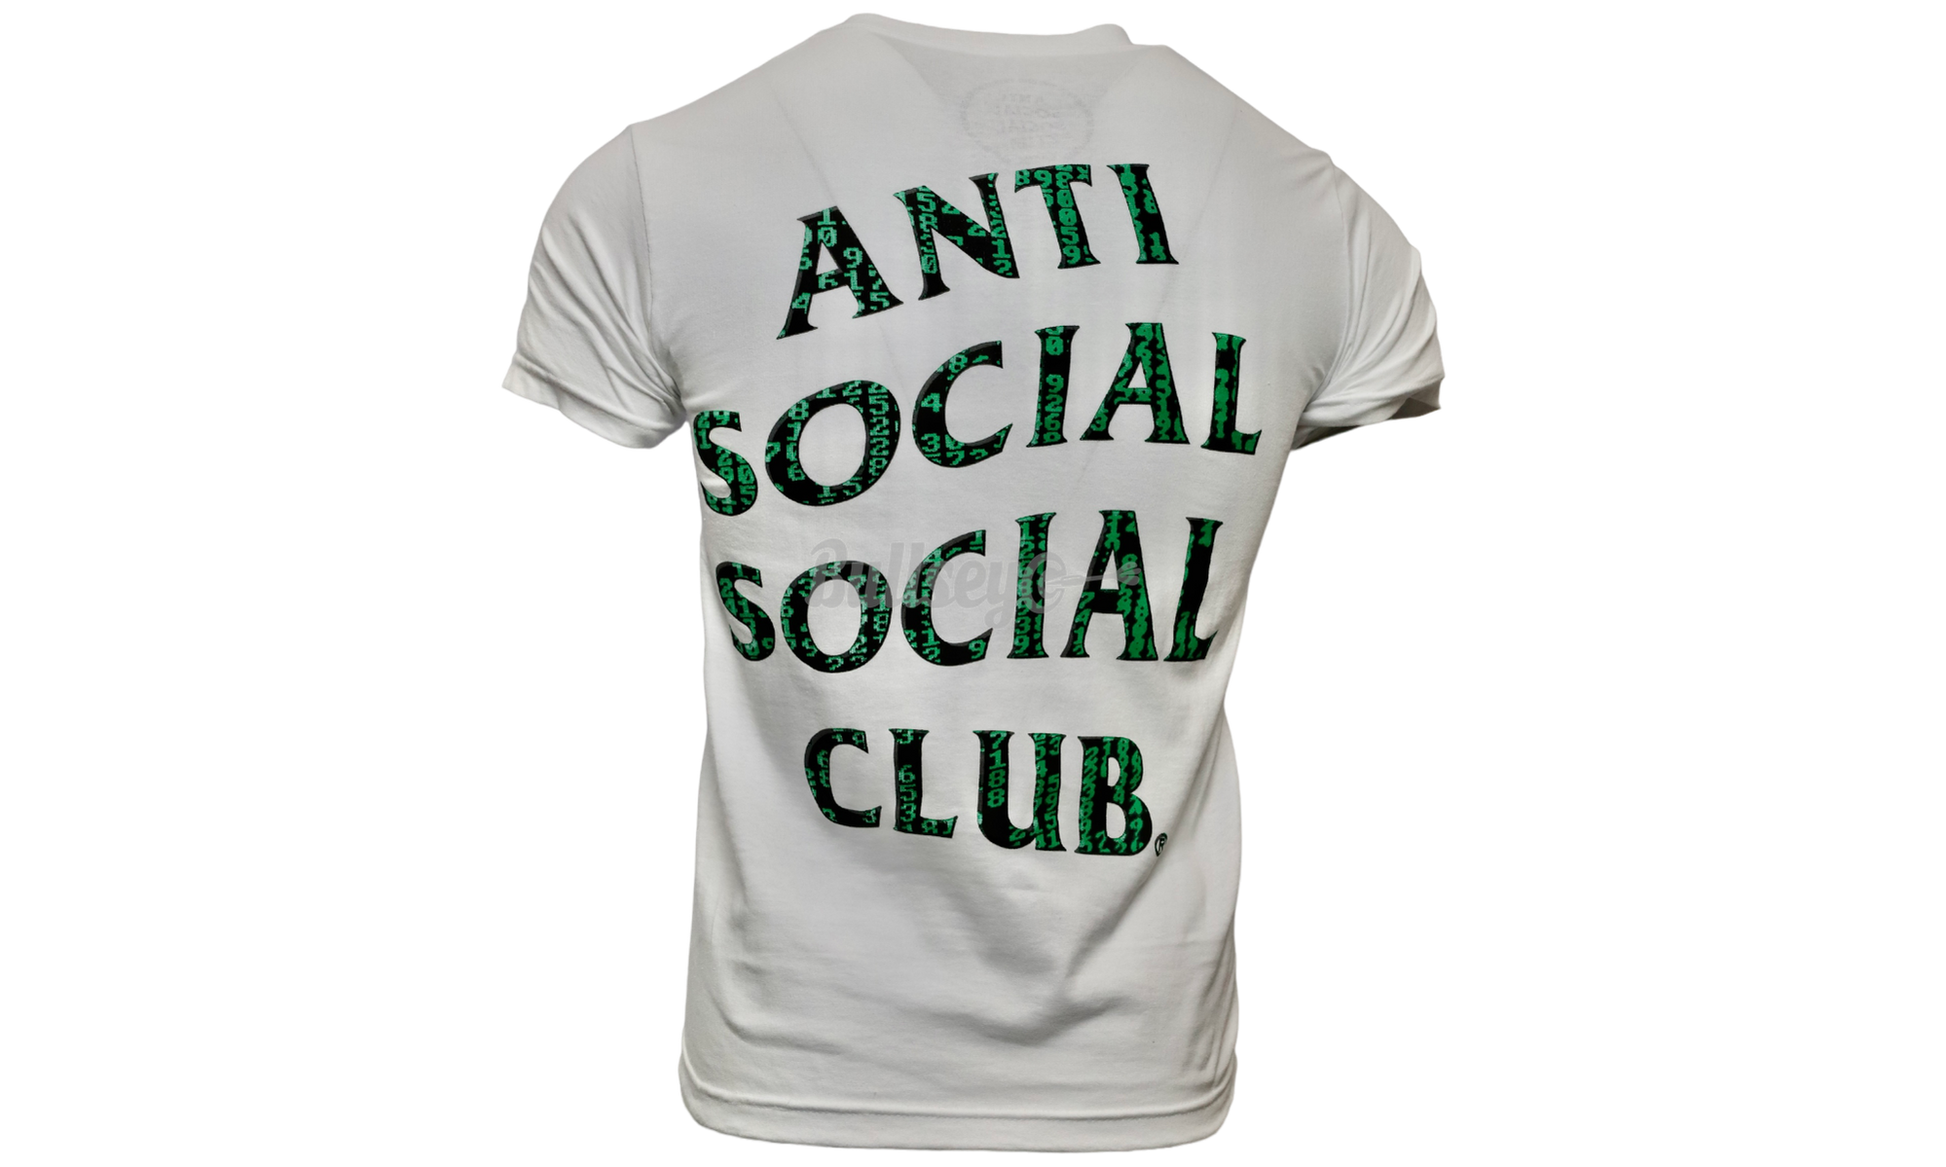 Anti-Social Club "Glitch" White T-Shirt-Bullseye Sneaker Boutique